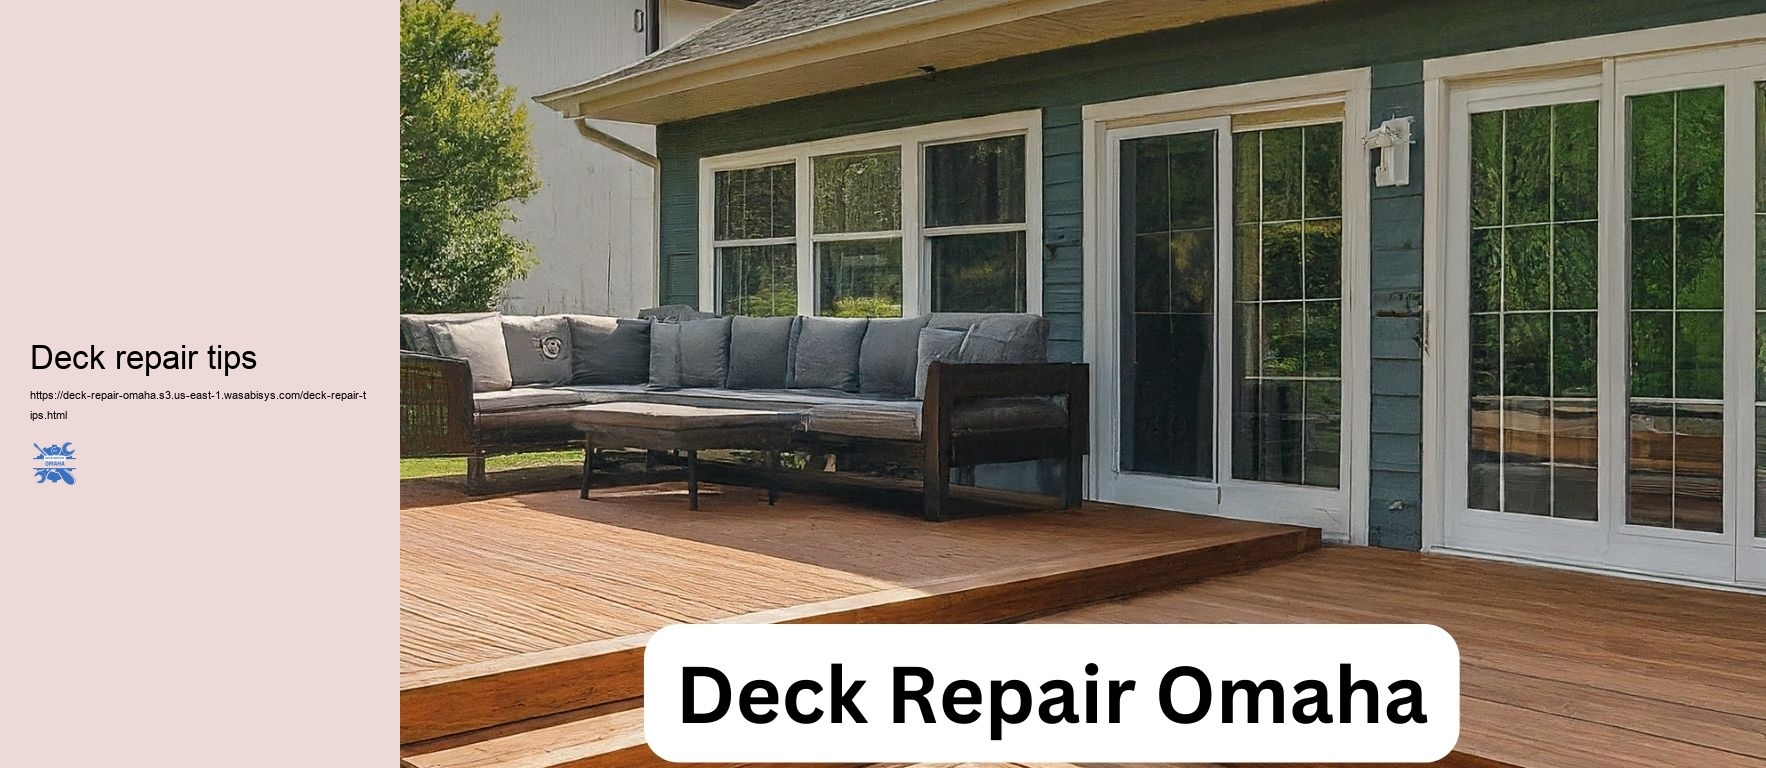 Deck repair tips